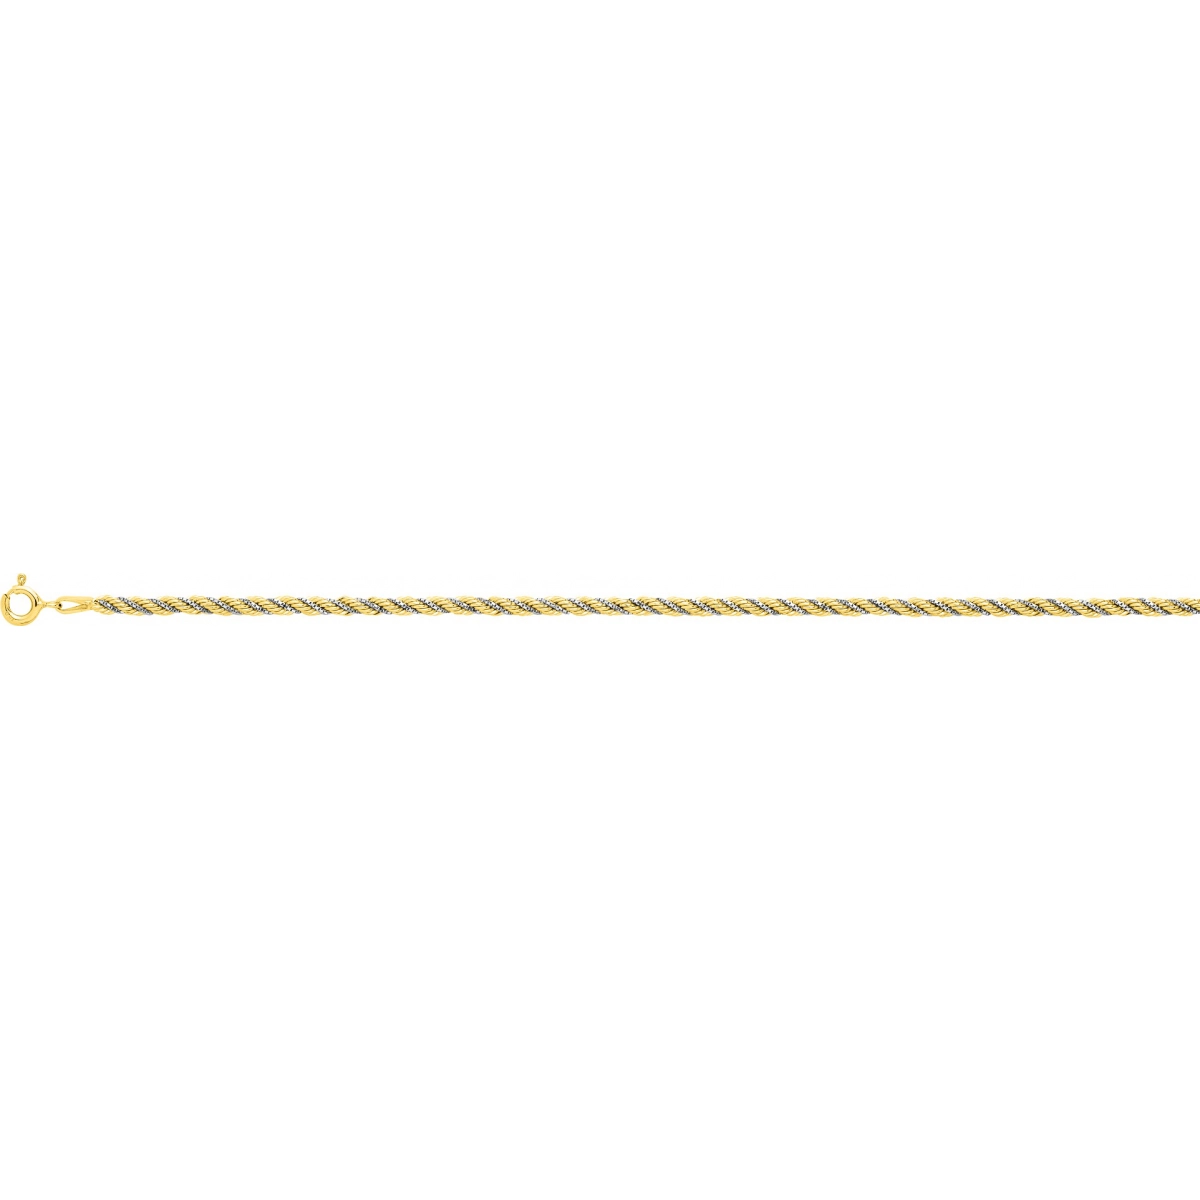 Bracelet 'cord chain' 18K 2TG Lua Blanca  3608.9 - Size 20